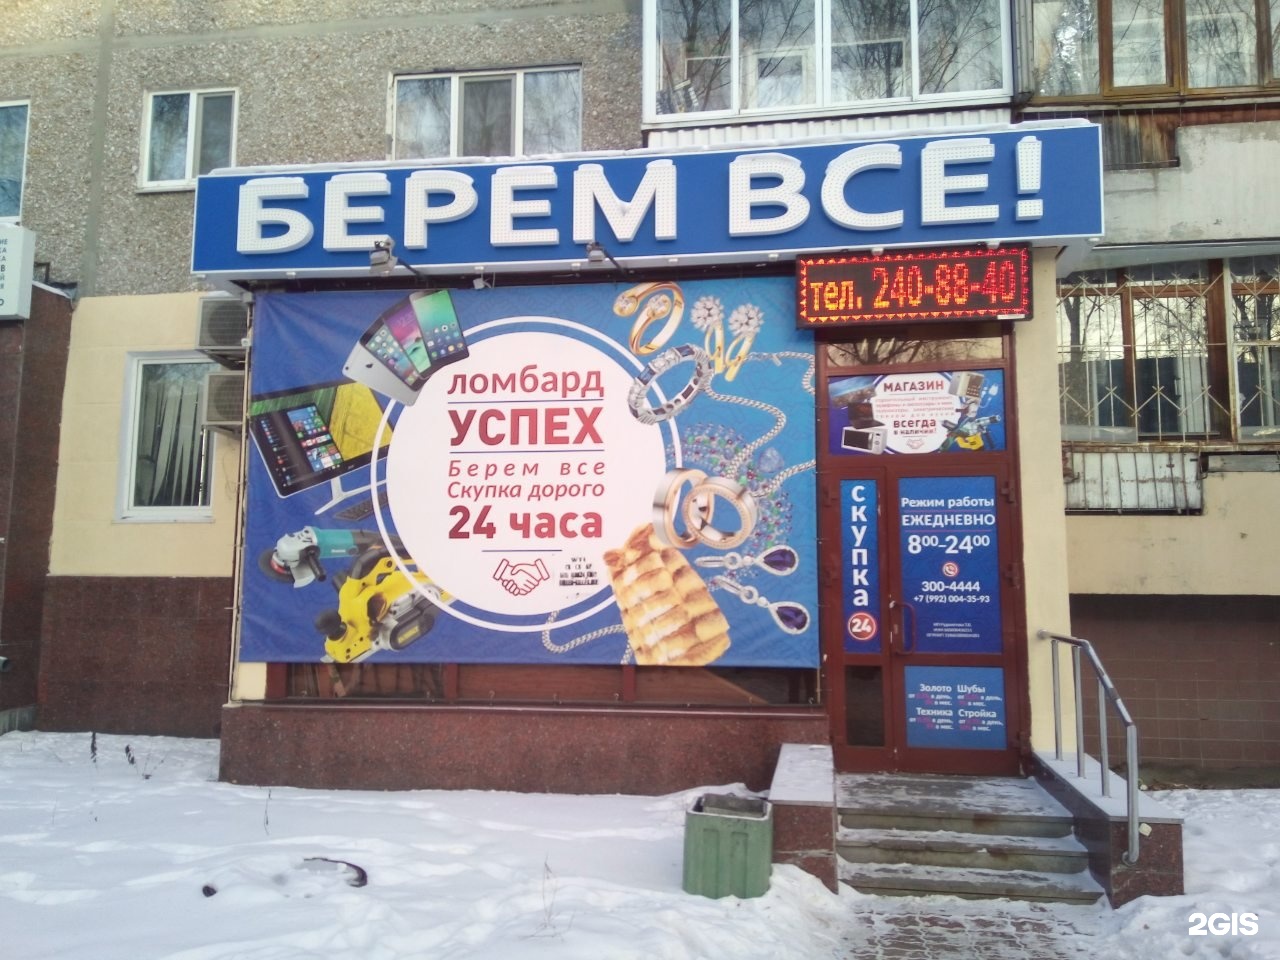 Комиссионный Магазин Золота Екатеринбург